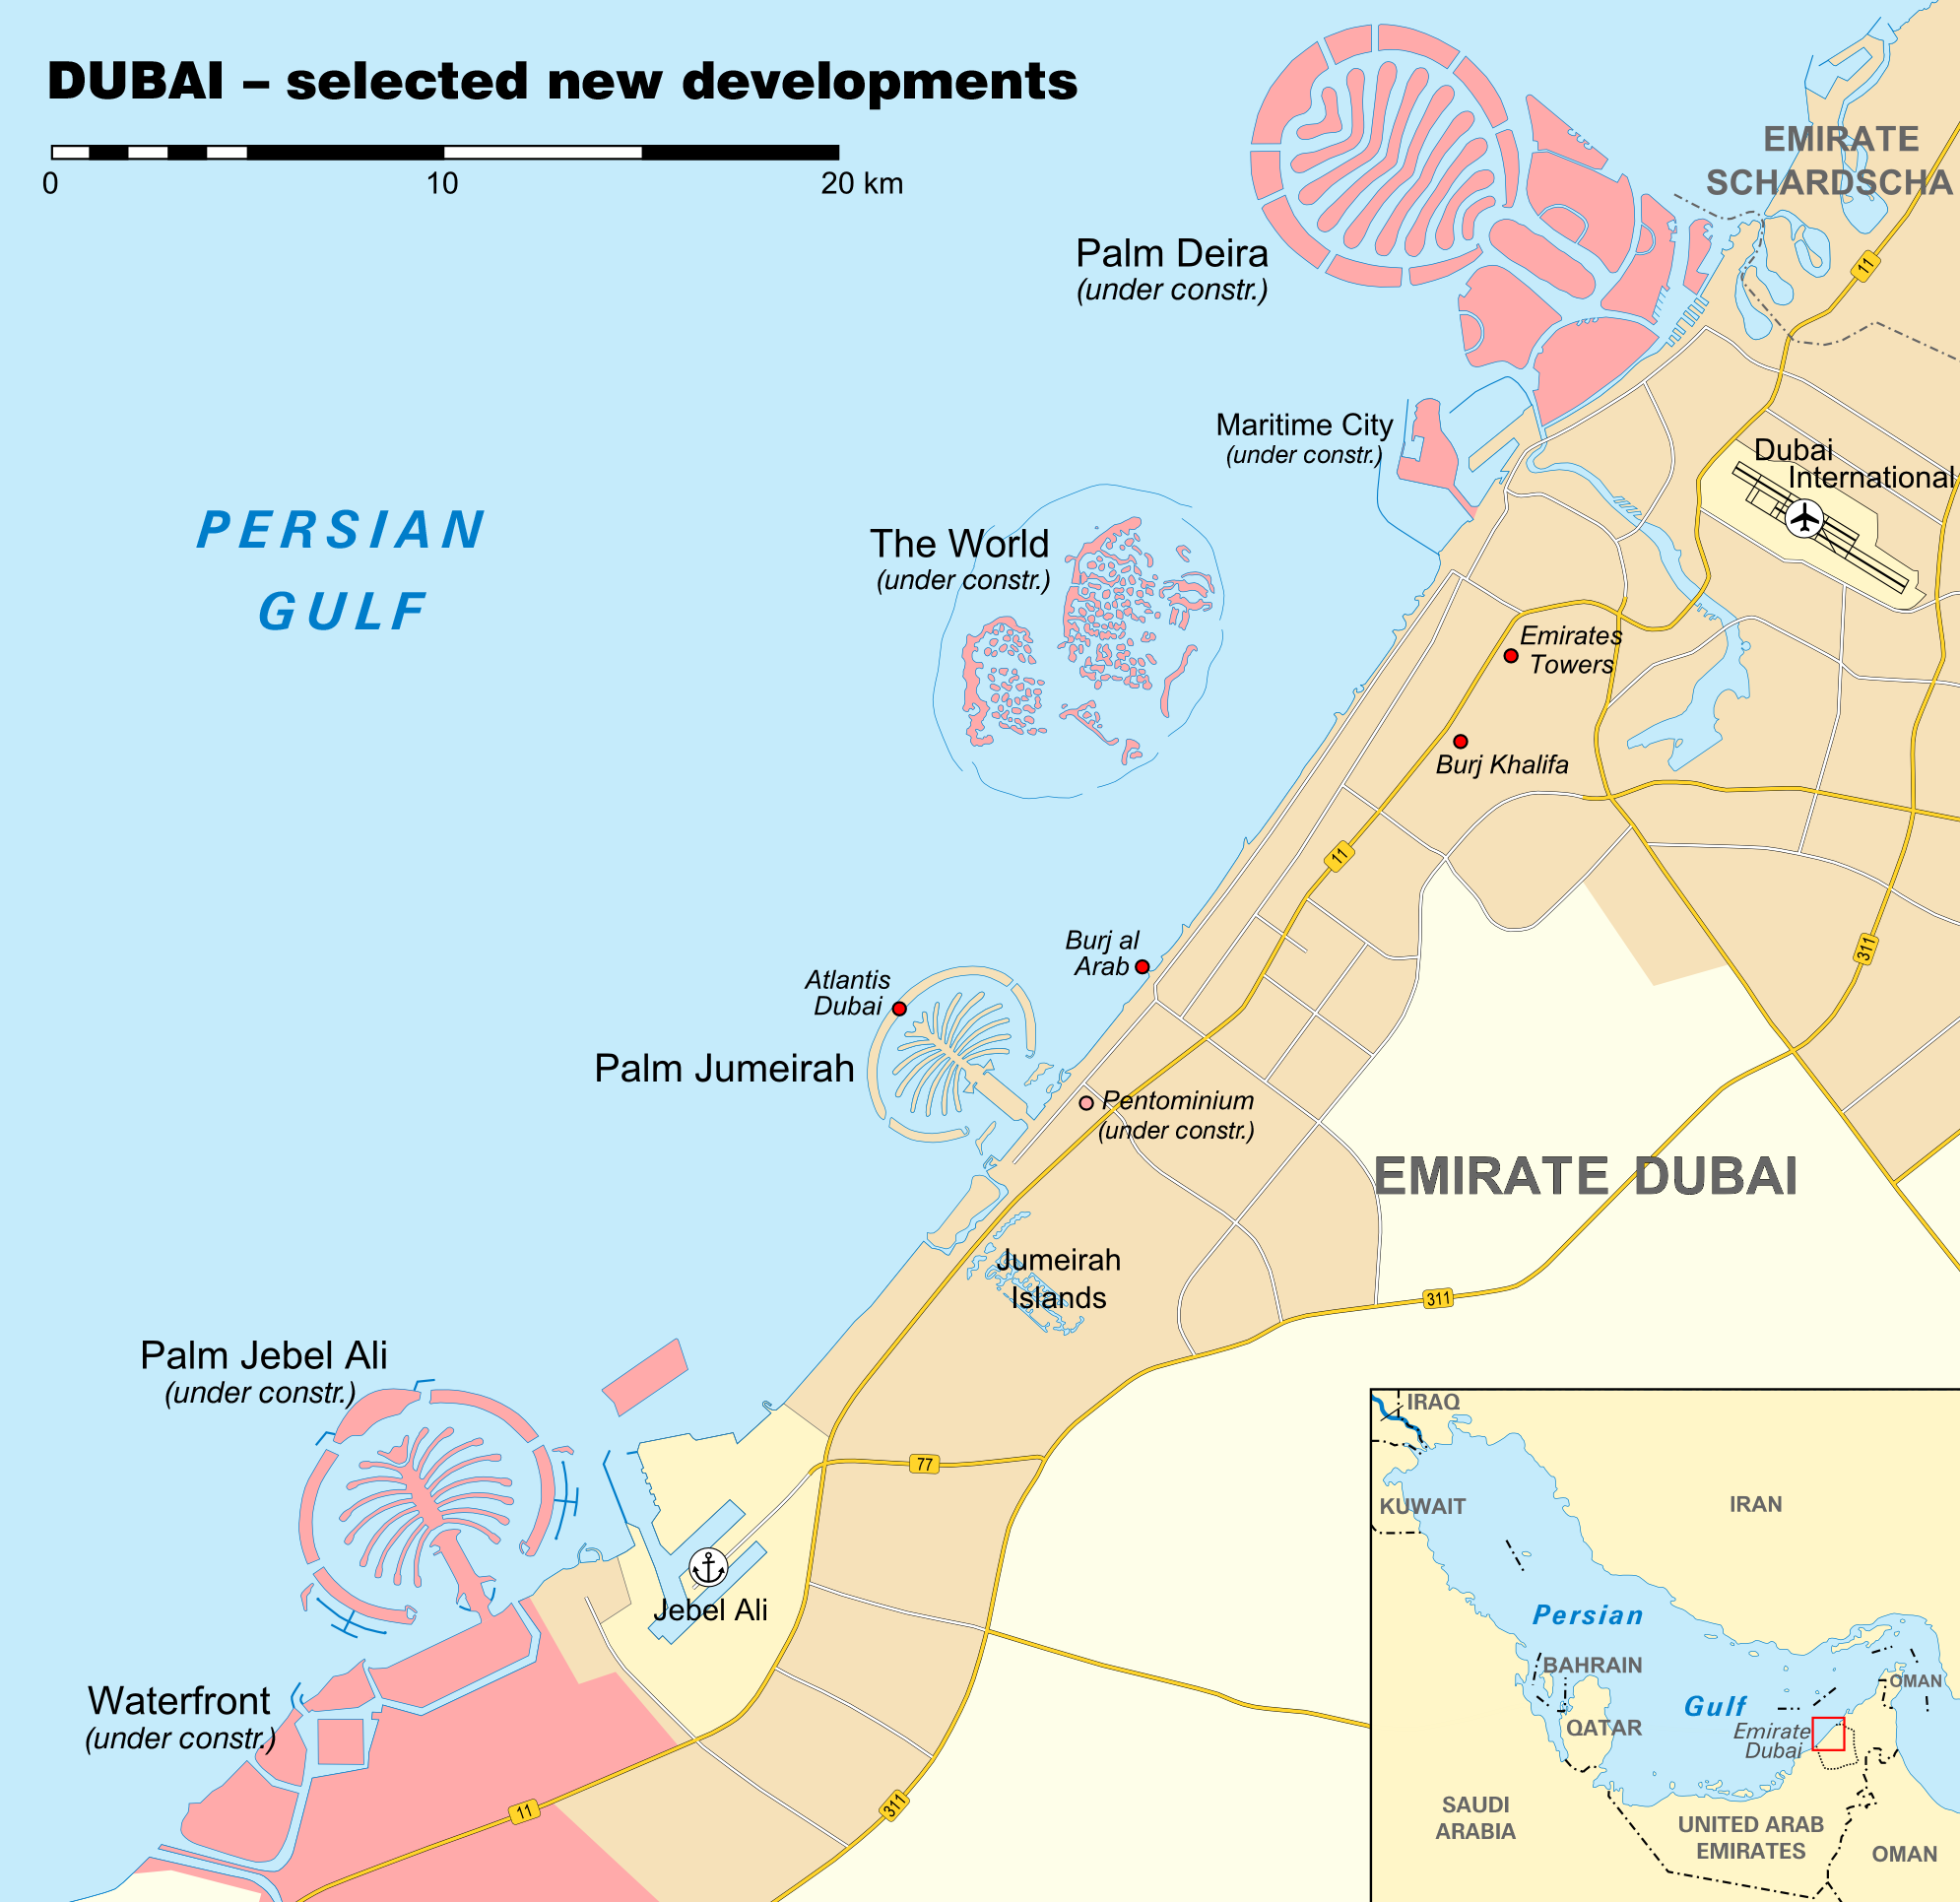 Sztuczne wyspy umożliwiają Chinom ekspansję na Morzu Południowochińskim. Zjednoczone Emiraty Arabskie wykorzystały archipelagi The World i Wyspy Palmowe do promocji turystyki i budowy wizerunku nowoczesnego państwa. Oba przykłady pokazują, jak ważnym surowcem w globalnej układance pozostaje piasek. (źródło https://upload.wikimedia.org/wikipedia/commons/4/48/Dubai_new_developments.png).